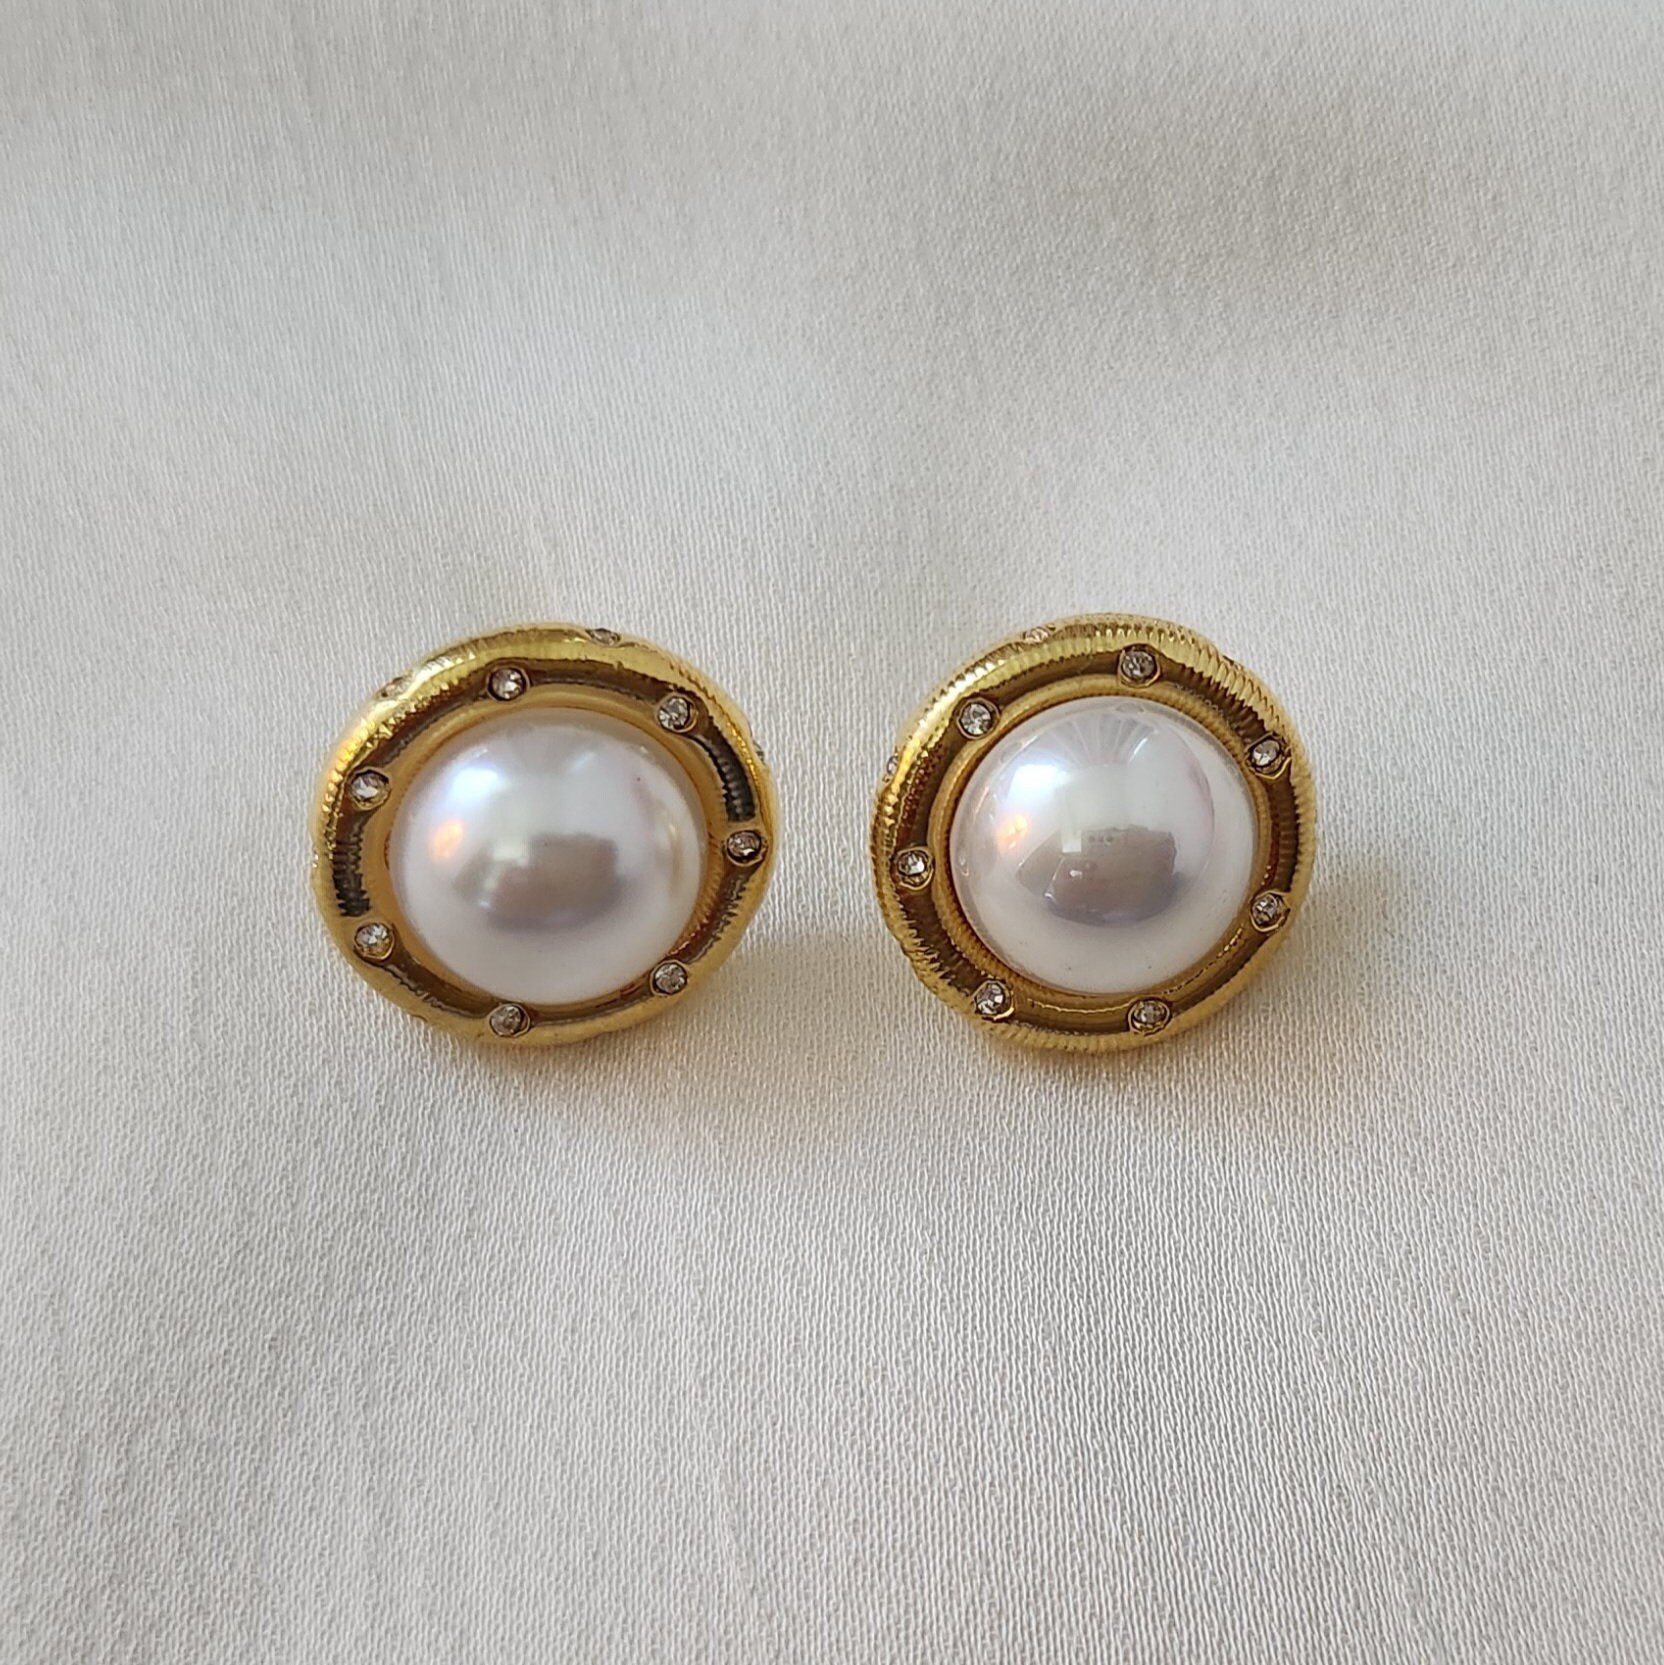 Buy Pearl Stud Earrings, Large Pearl Earrings, 14k Gold Filled Pearl  Earrings, Rose Gold Pearl Earrings, Silver Pearl Studs, June Birthstone  Online in India - Etsy